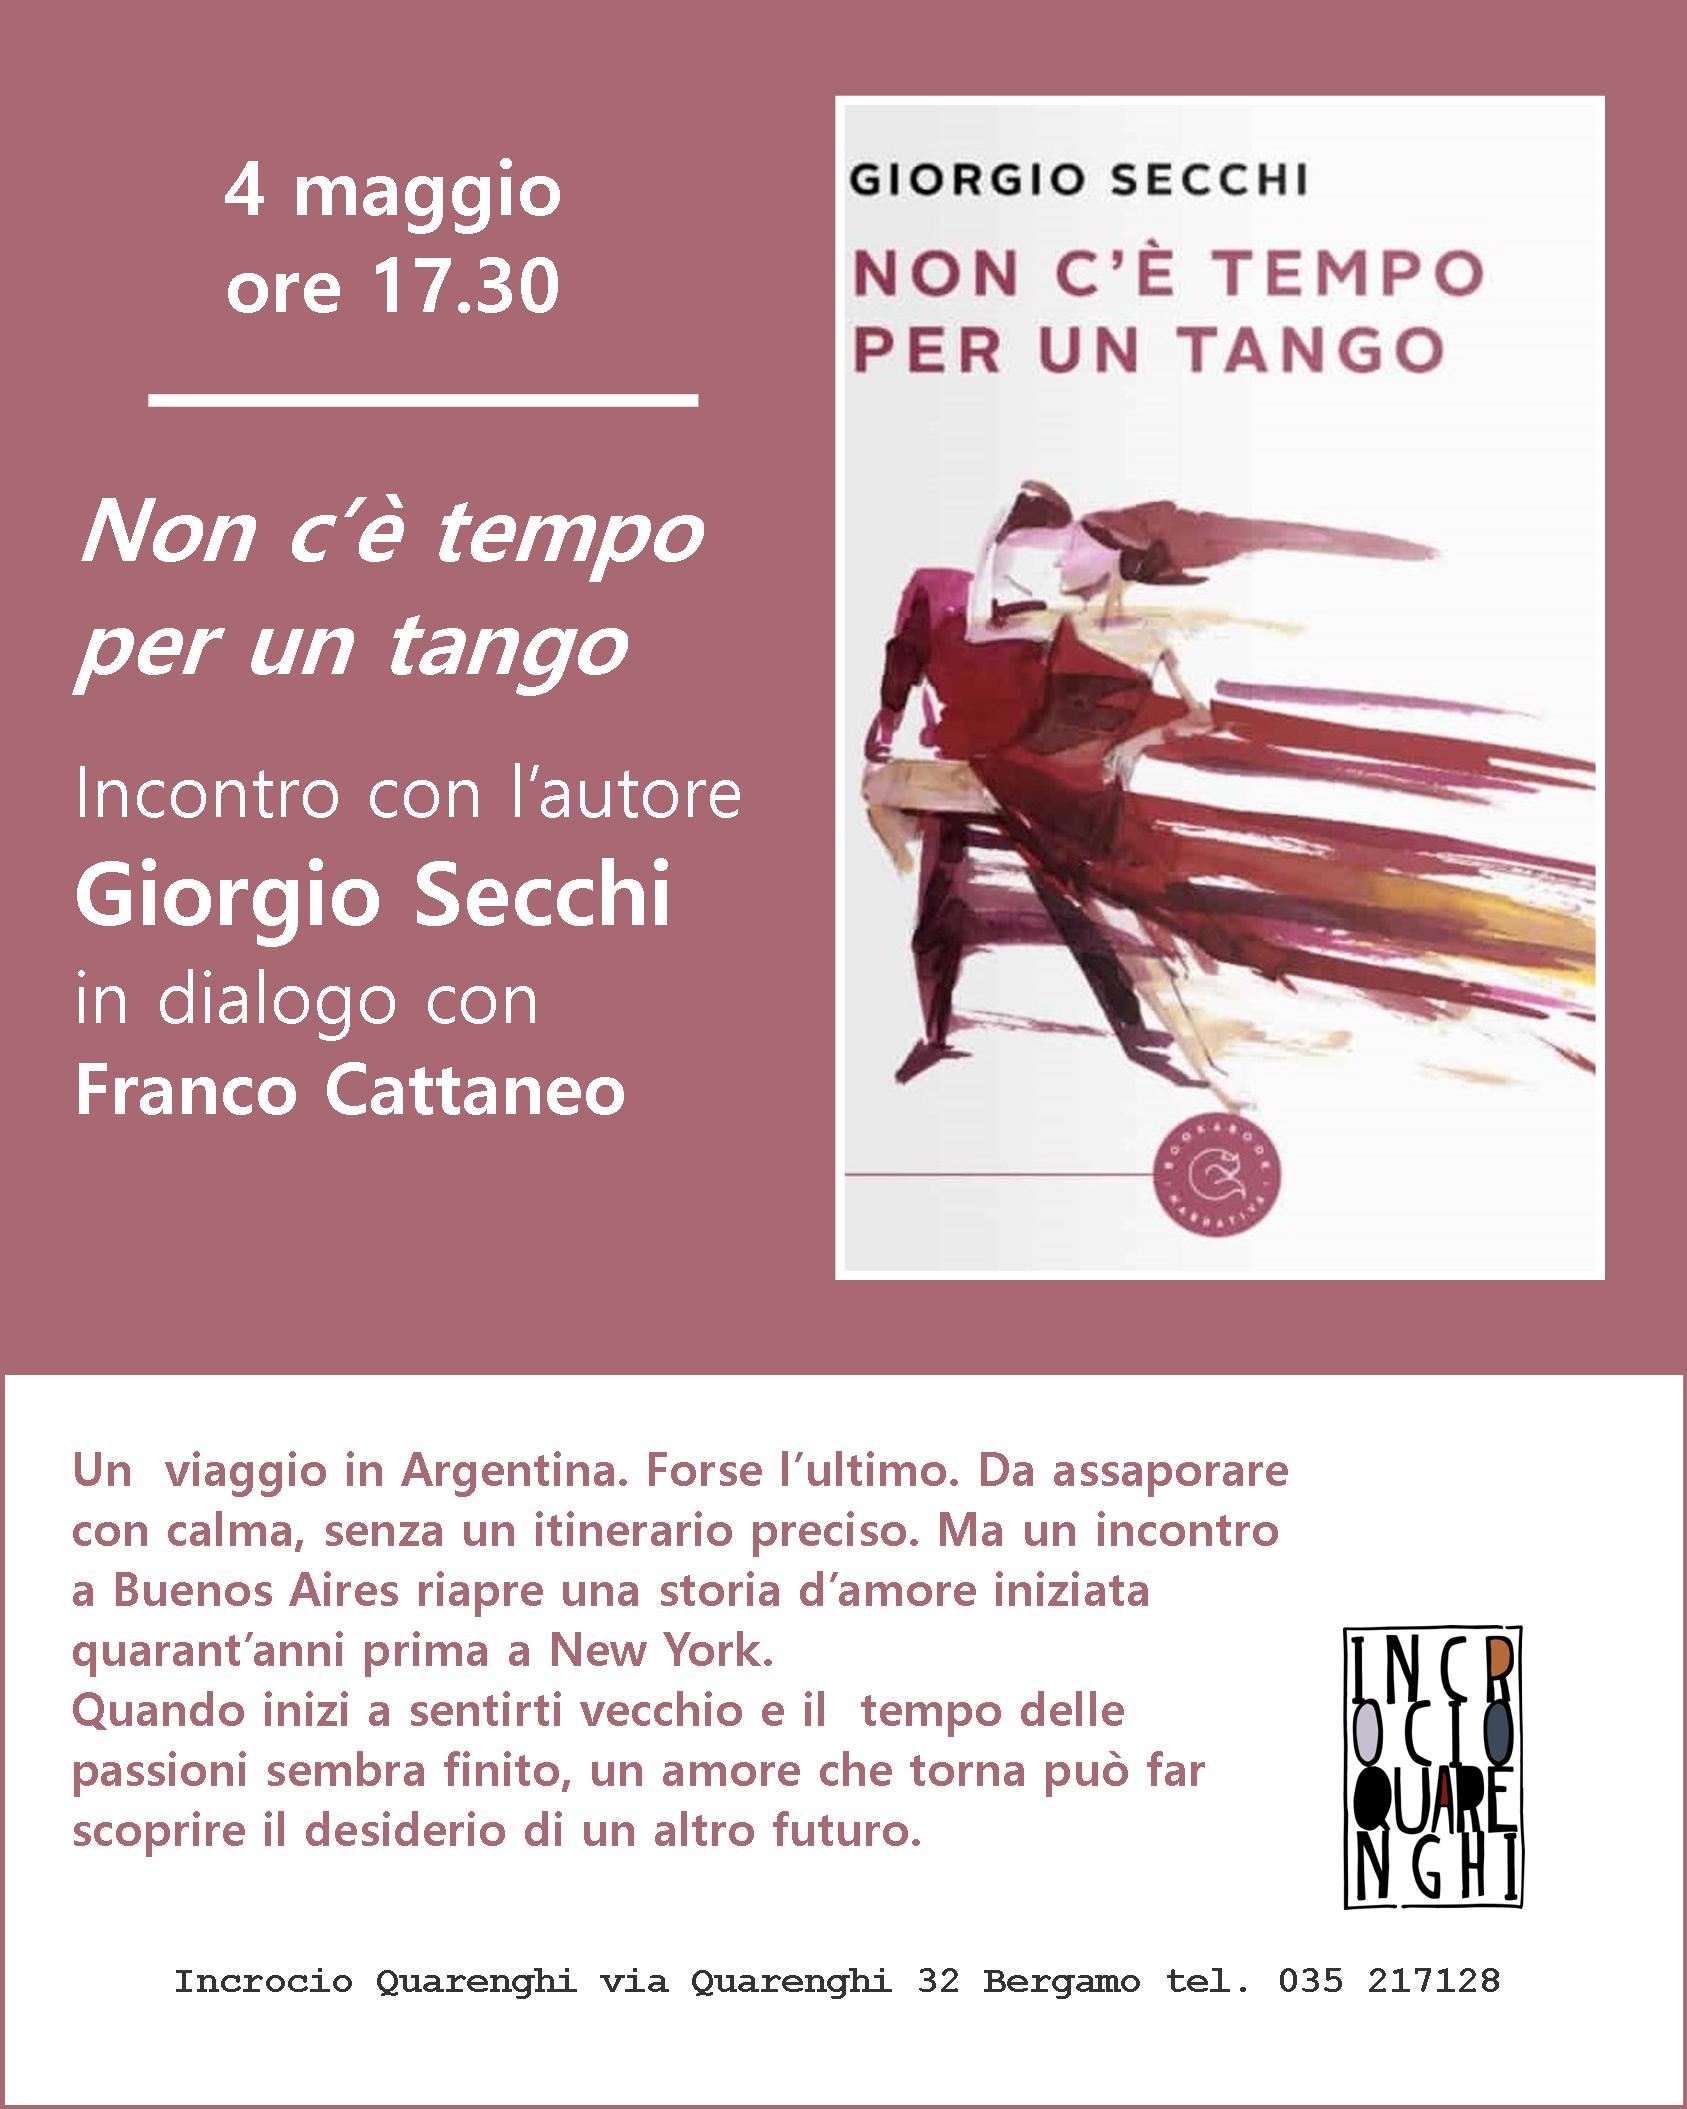 Presentazione del libro di Giorgio Secchi NON C'E' TEMPO PER UN TANGO, BookaBook editore